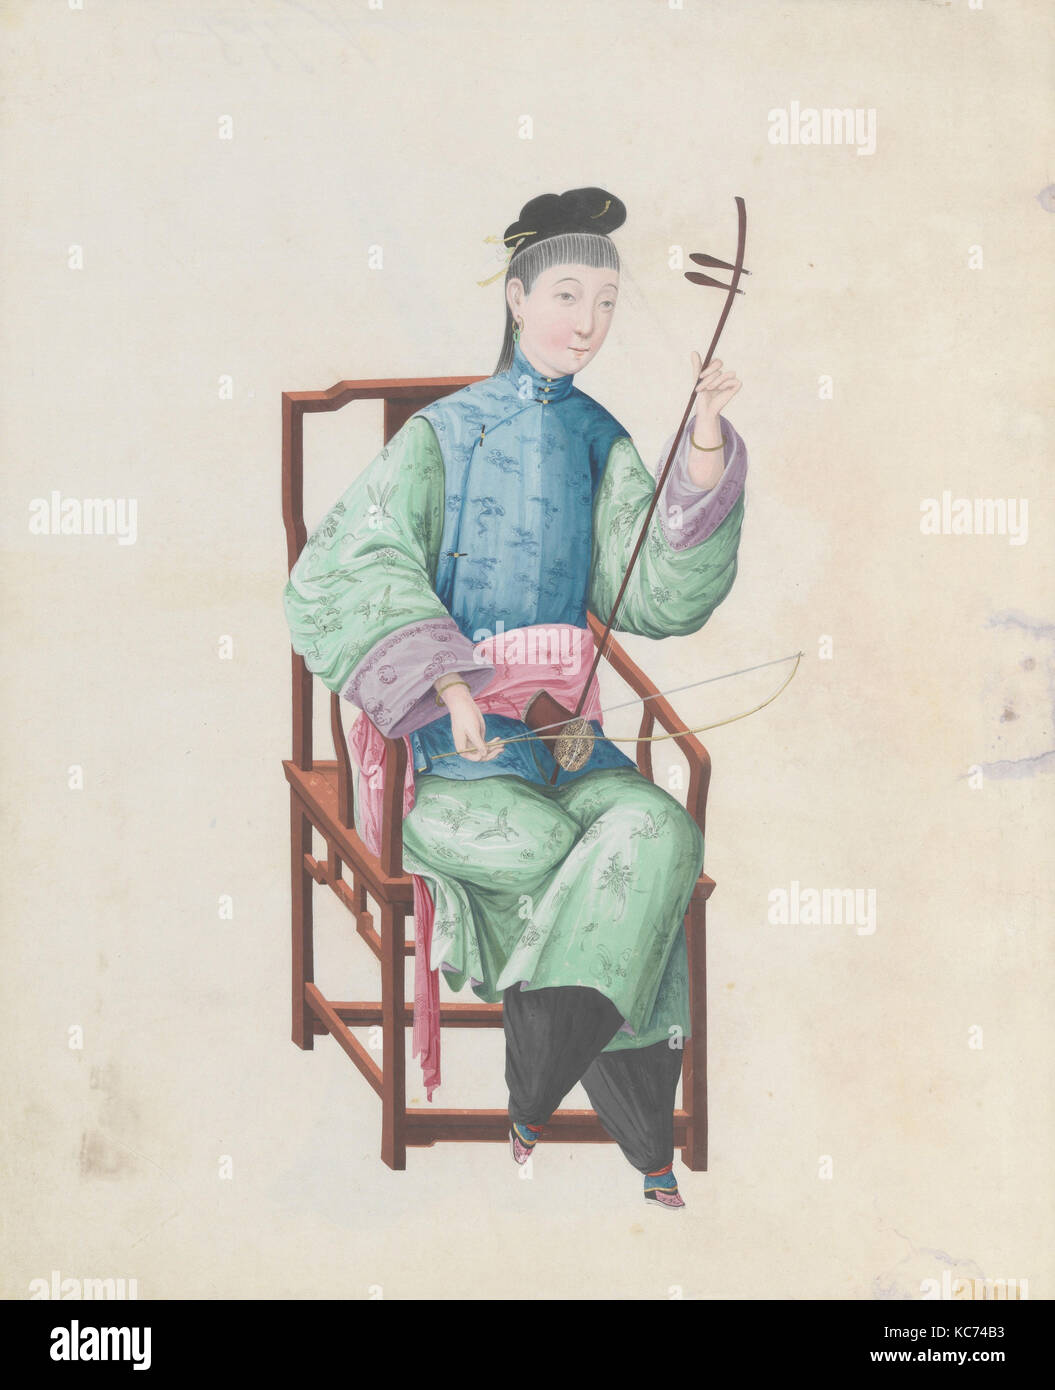 Aquarelle de musicien jouant gaohu( ?), fin du 18e siècle Banque D'Images